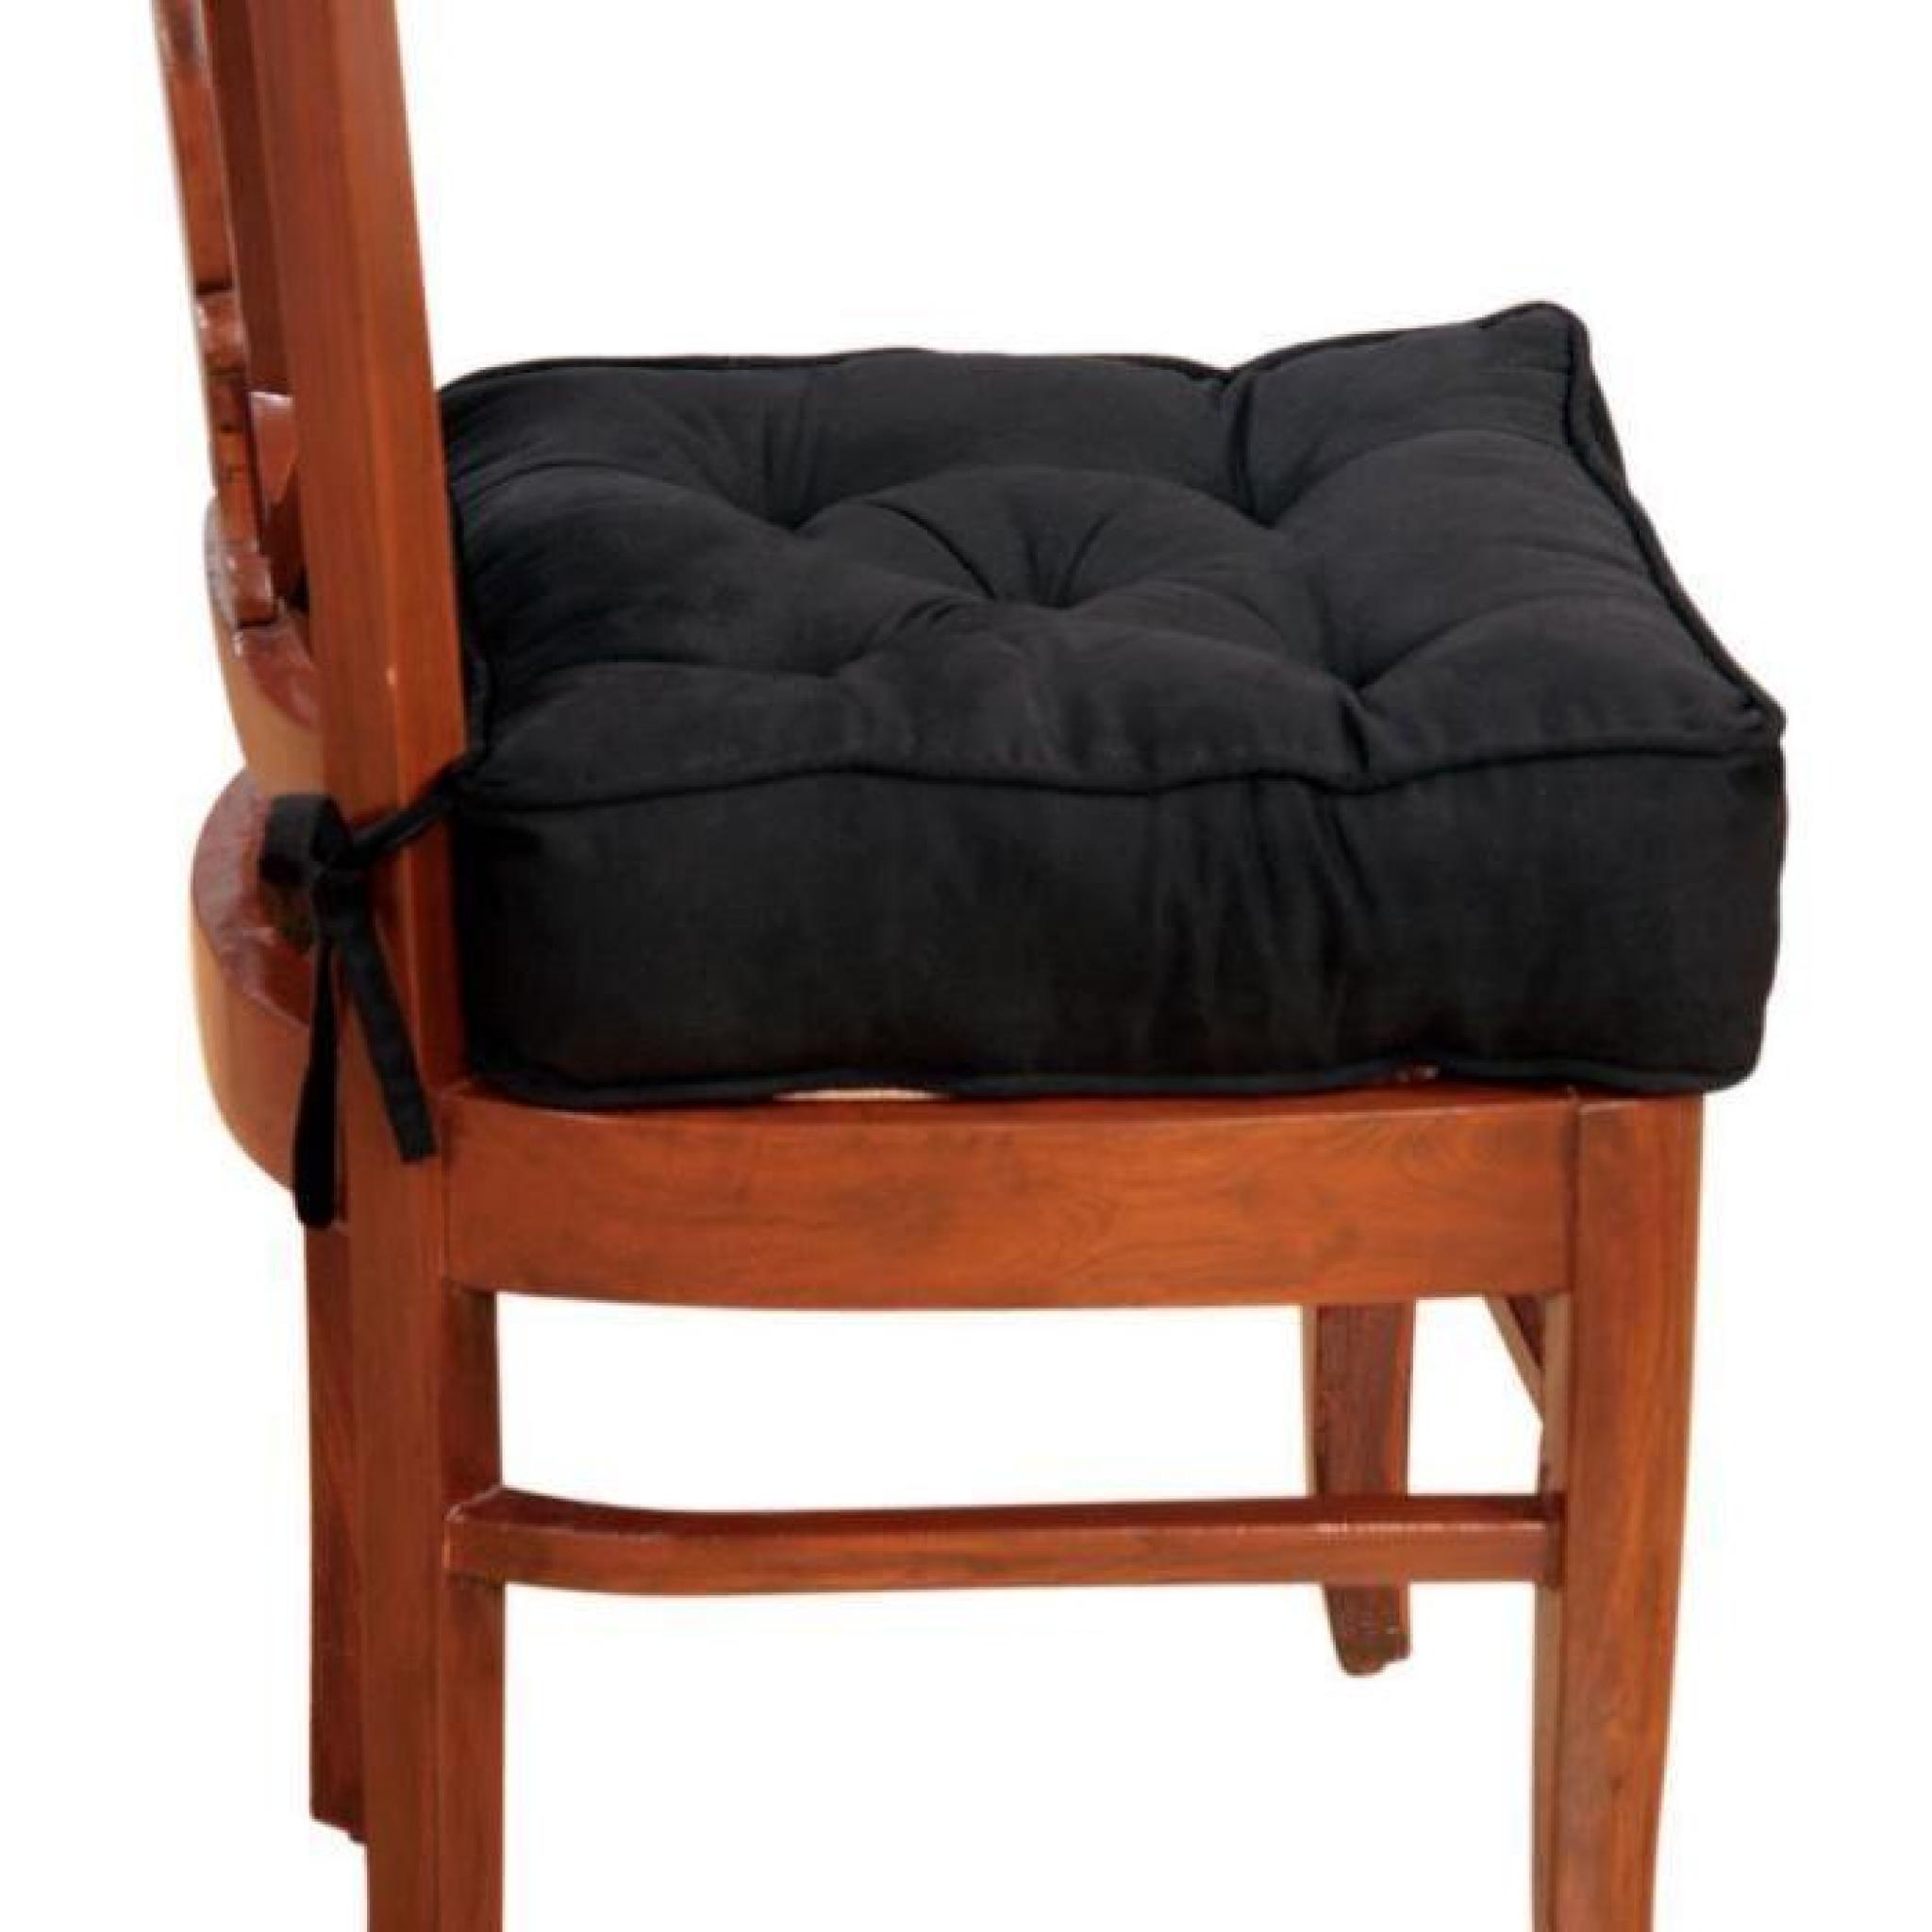 Galette de chaise rehausseur en simili daim - Noir